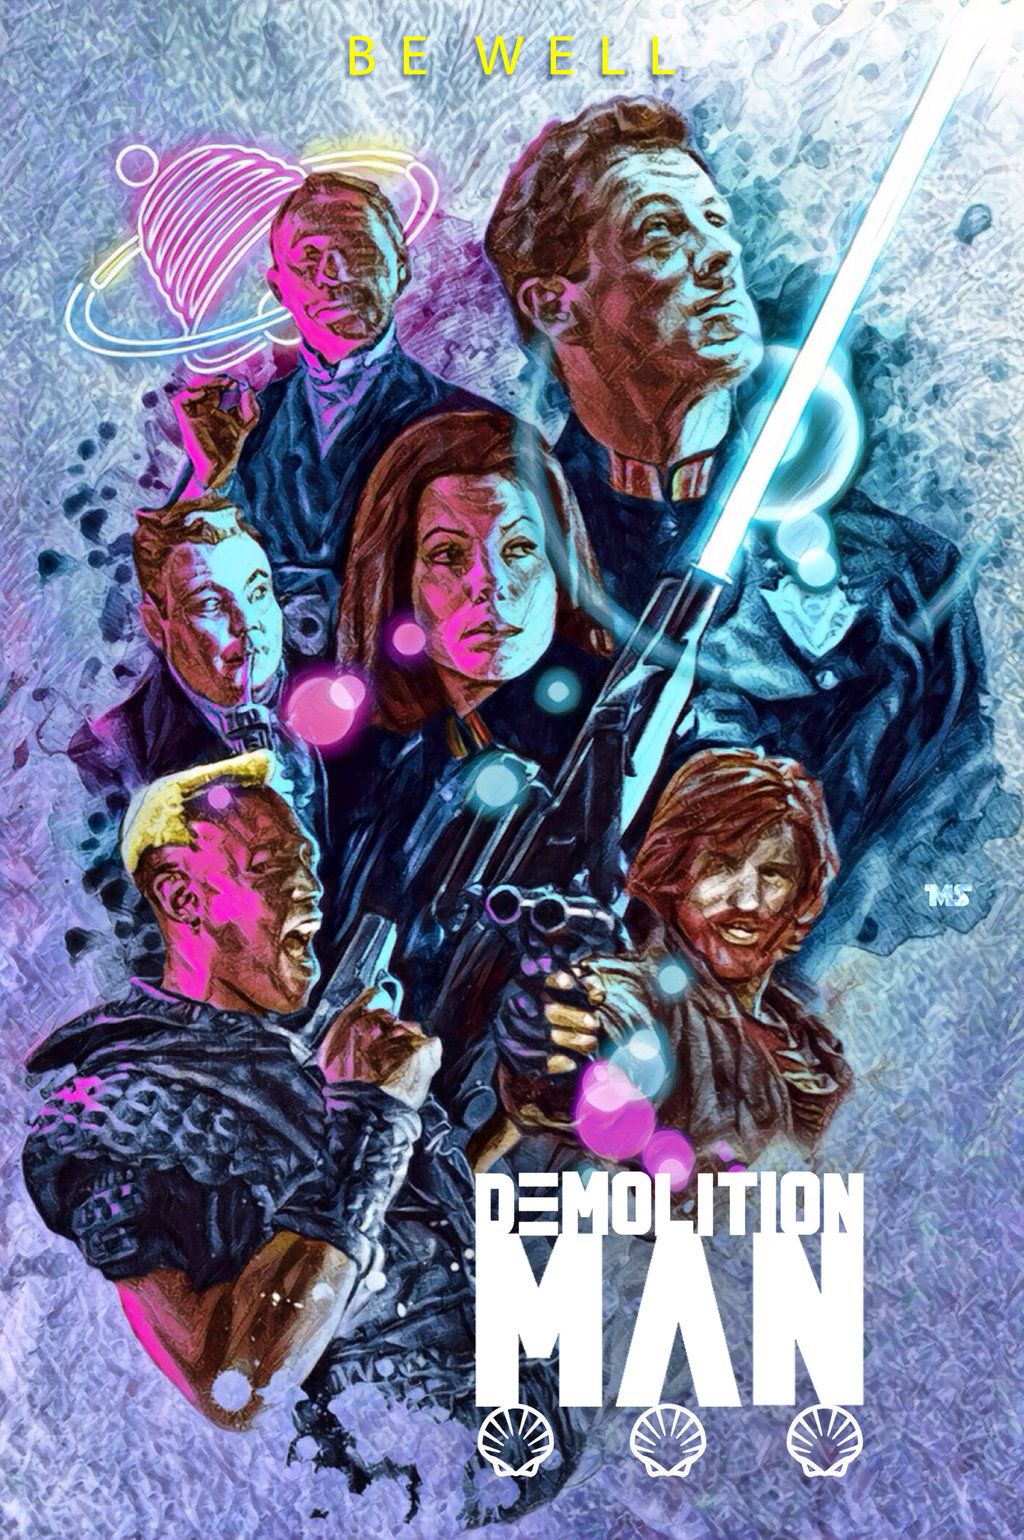 Demolition Man by Matthew Spurlock. Best movie posters, Action movie poster, Alternative movie posters